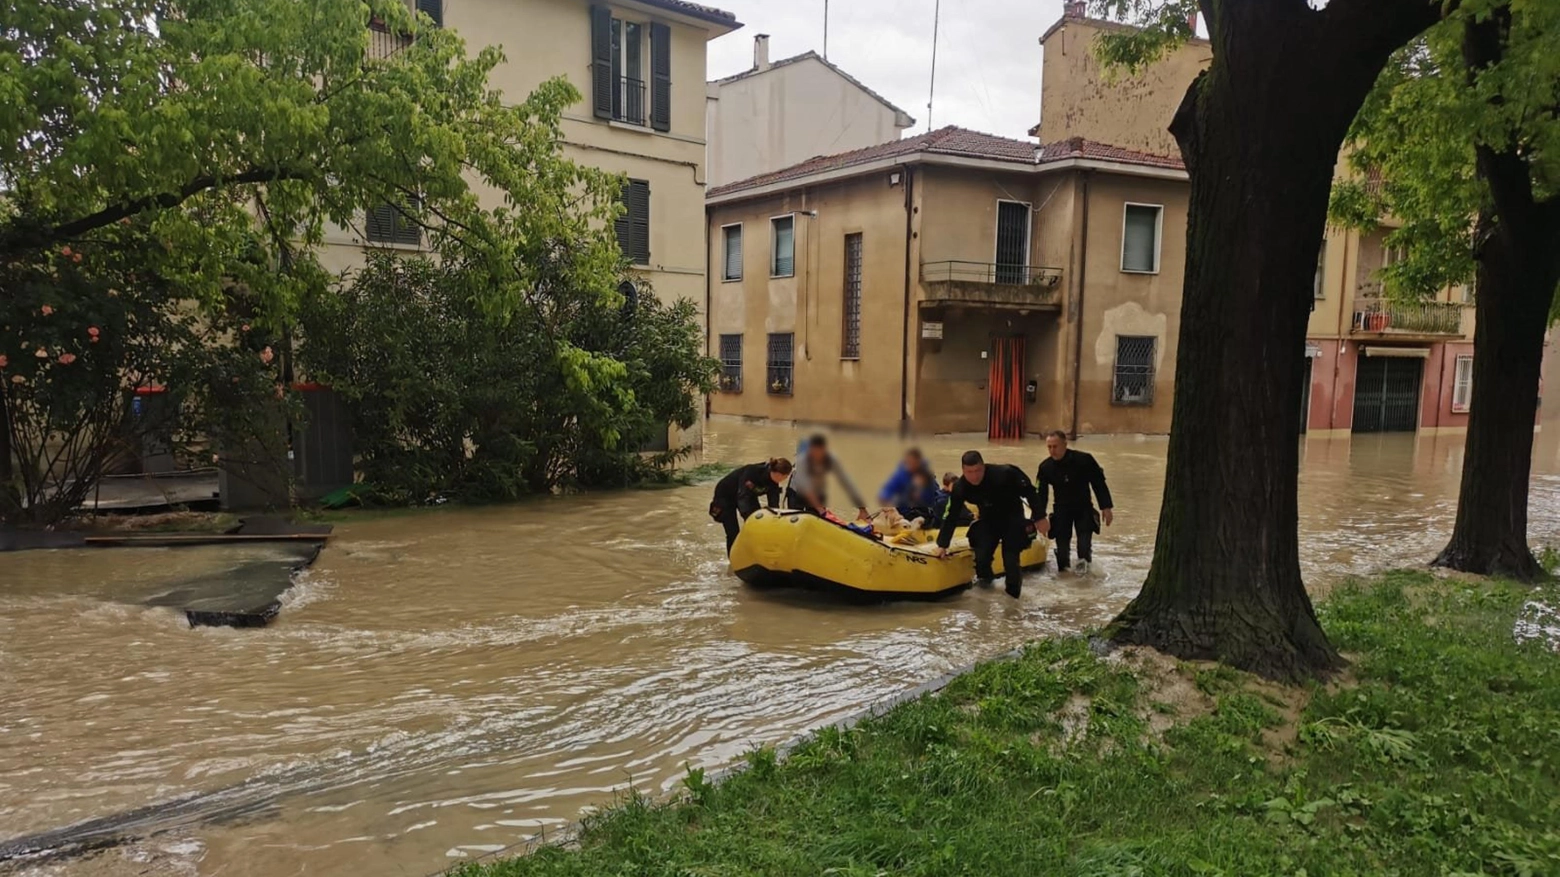 Maltempo: esonda anche Santerno a Lugo, evacuazioni in corso